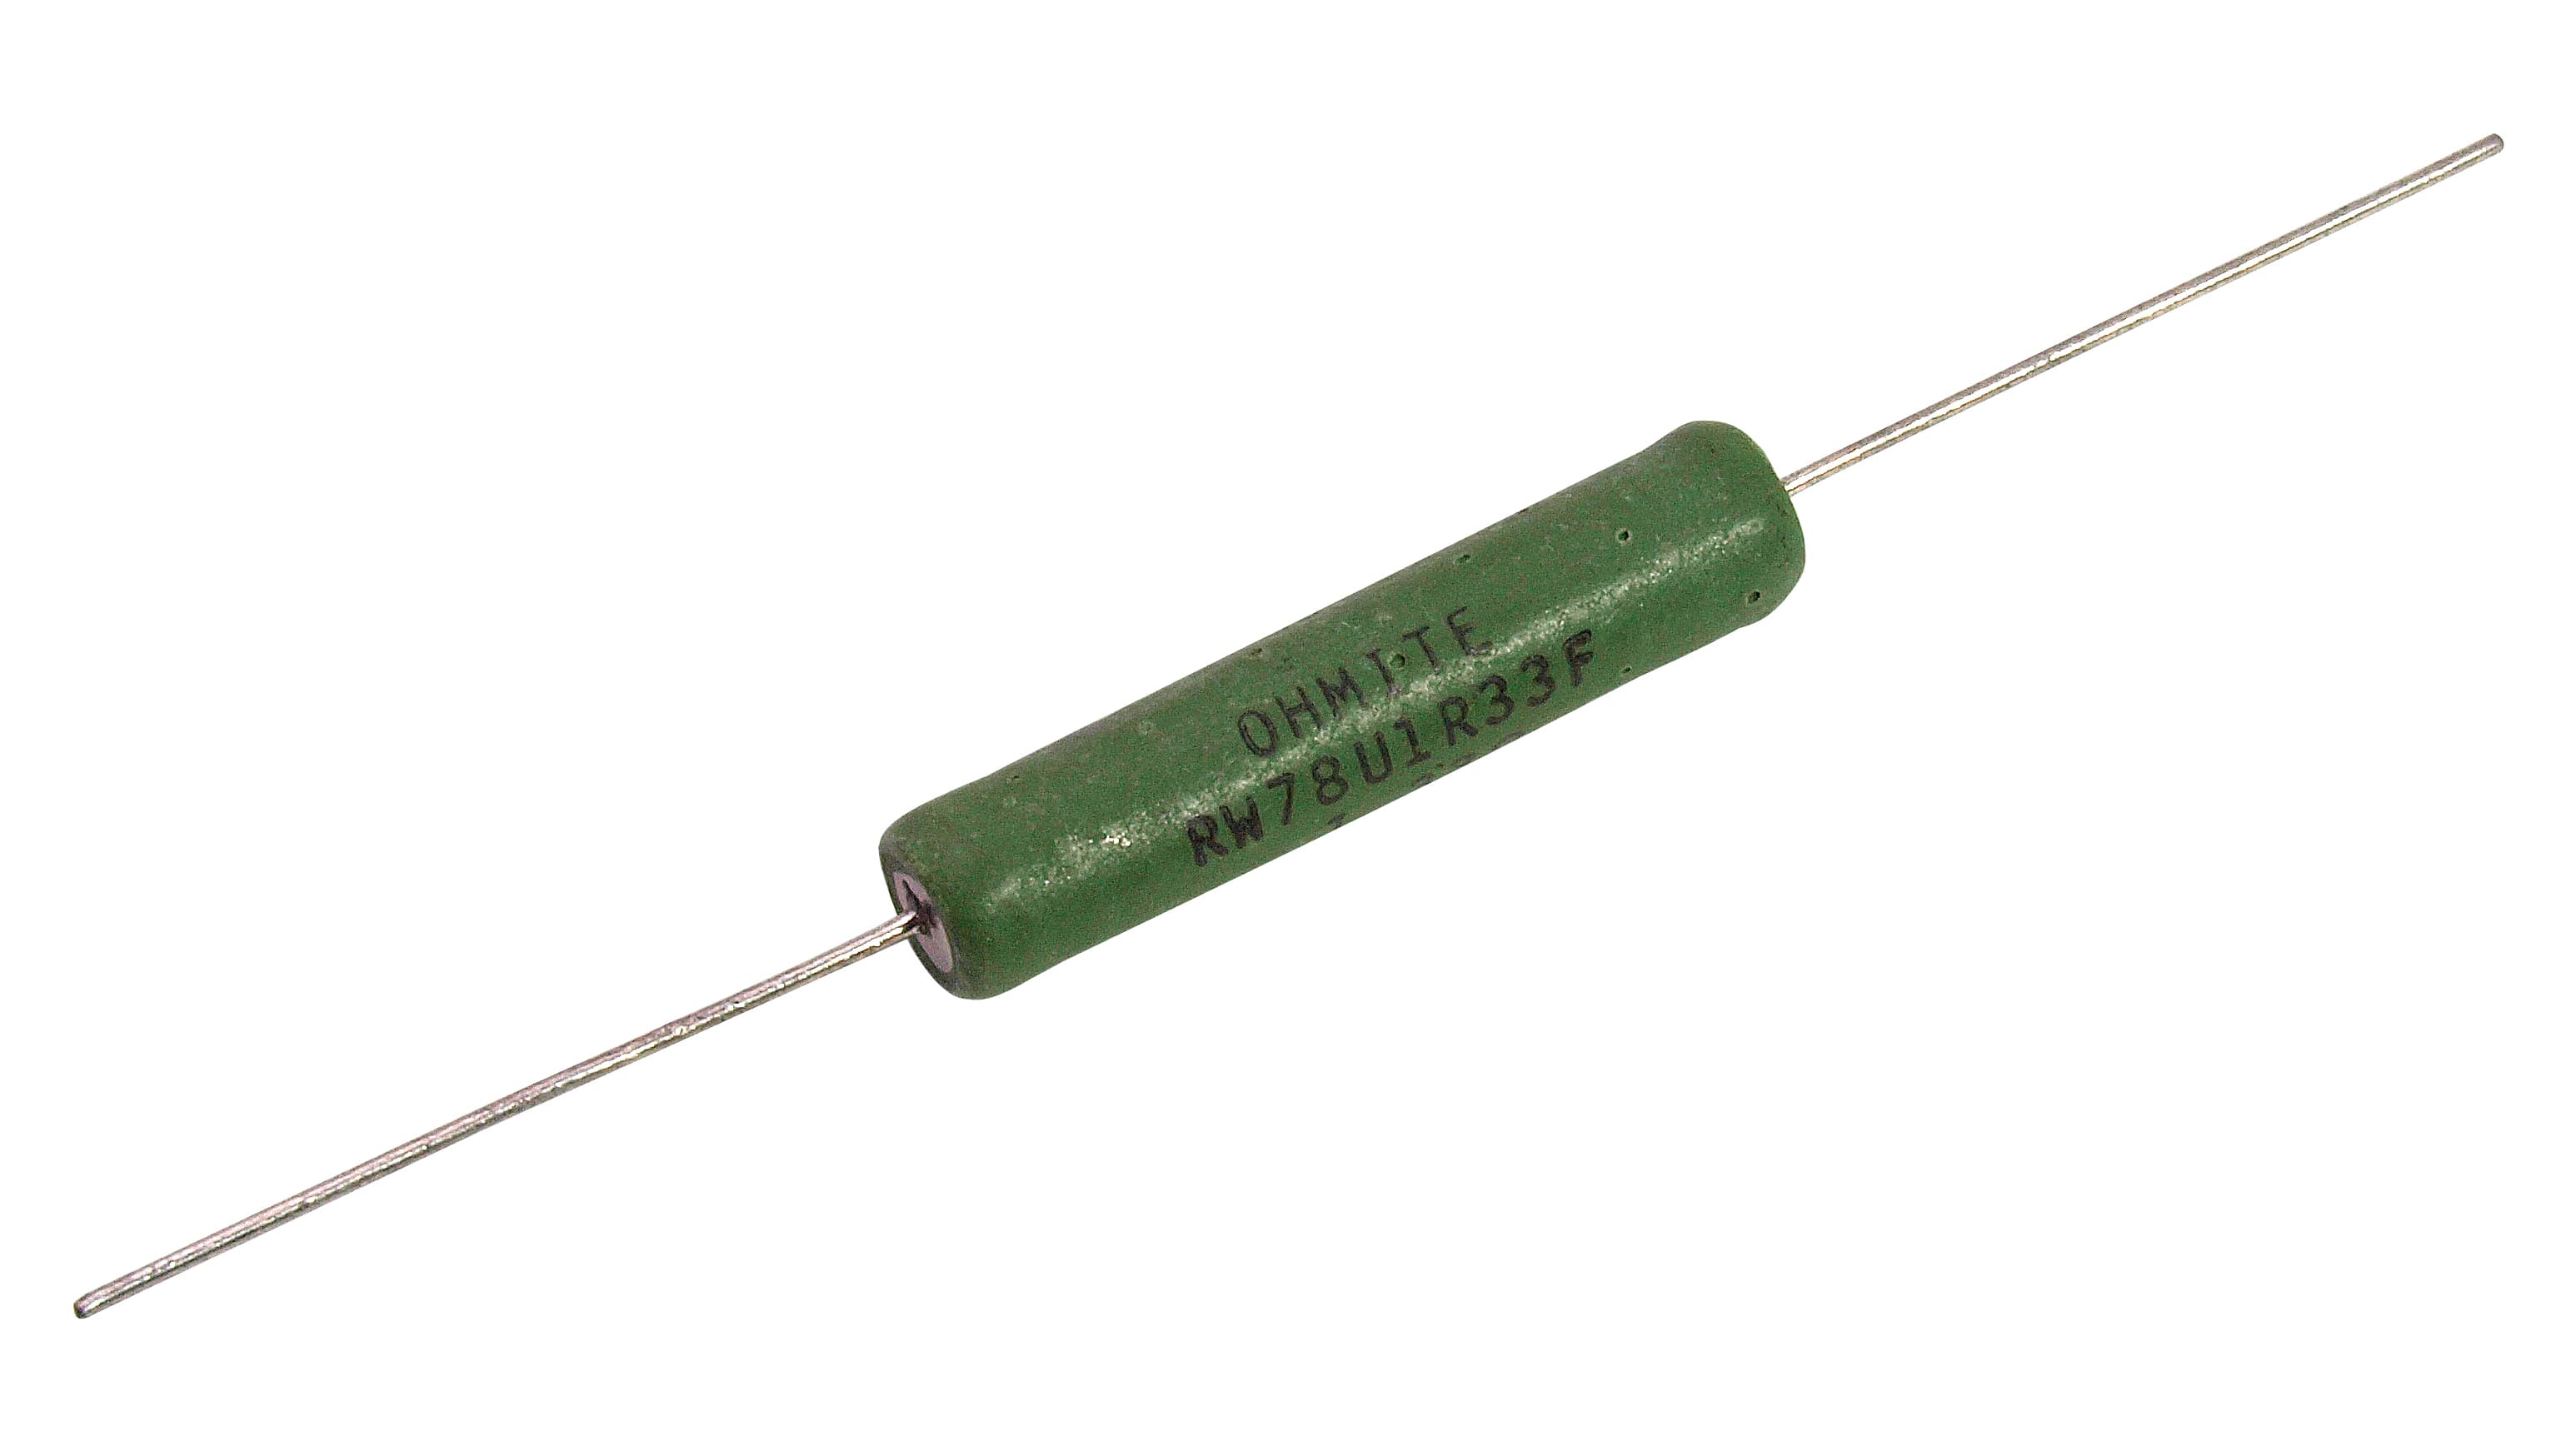 Wire Wound Resistor - Wirewound Power Resistor | Ohmite Mfg Co